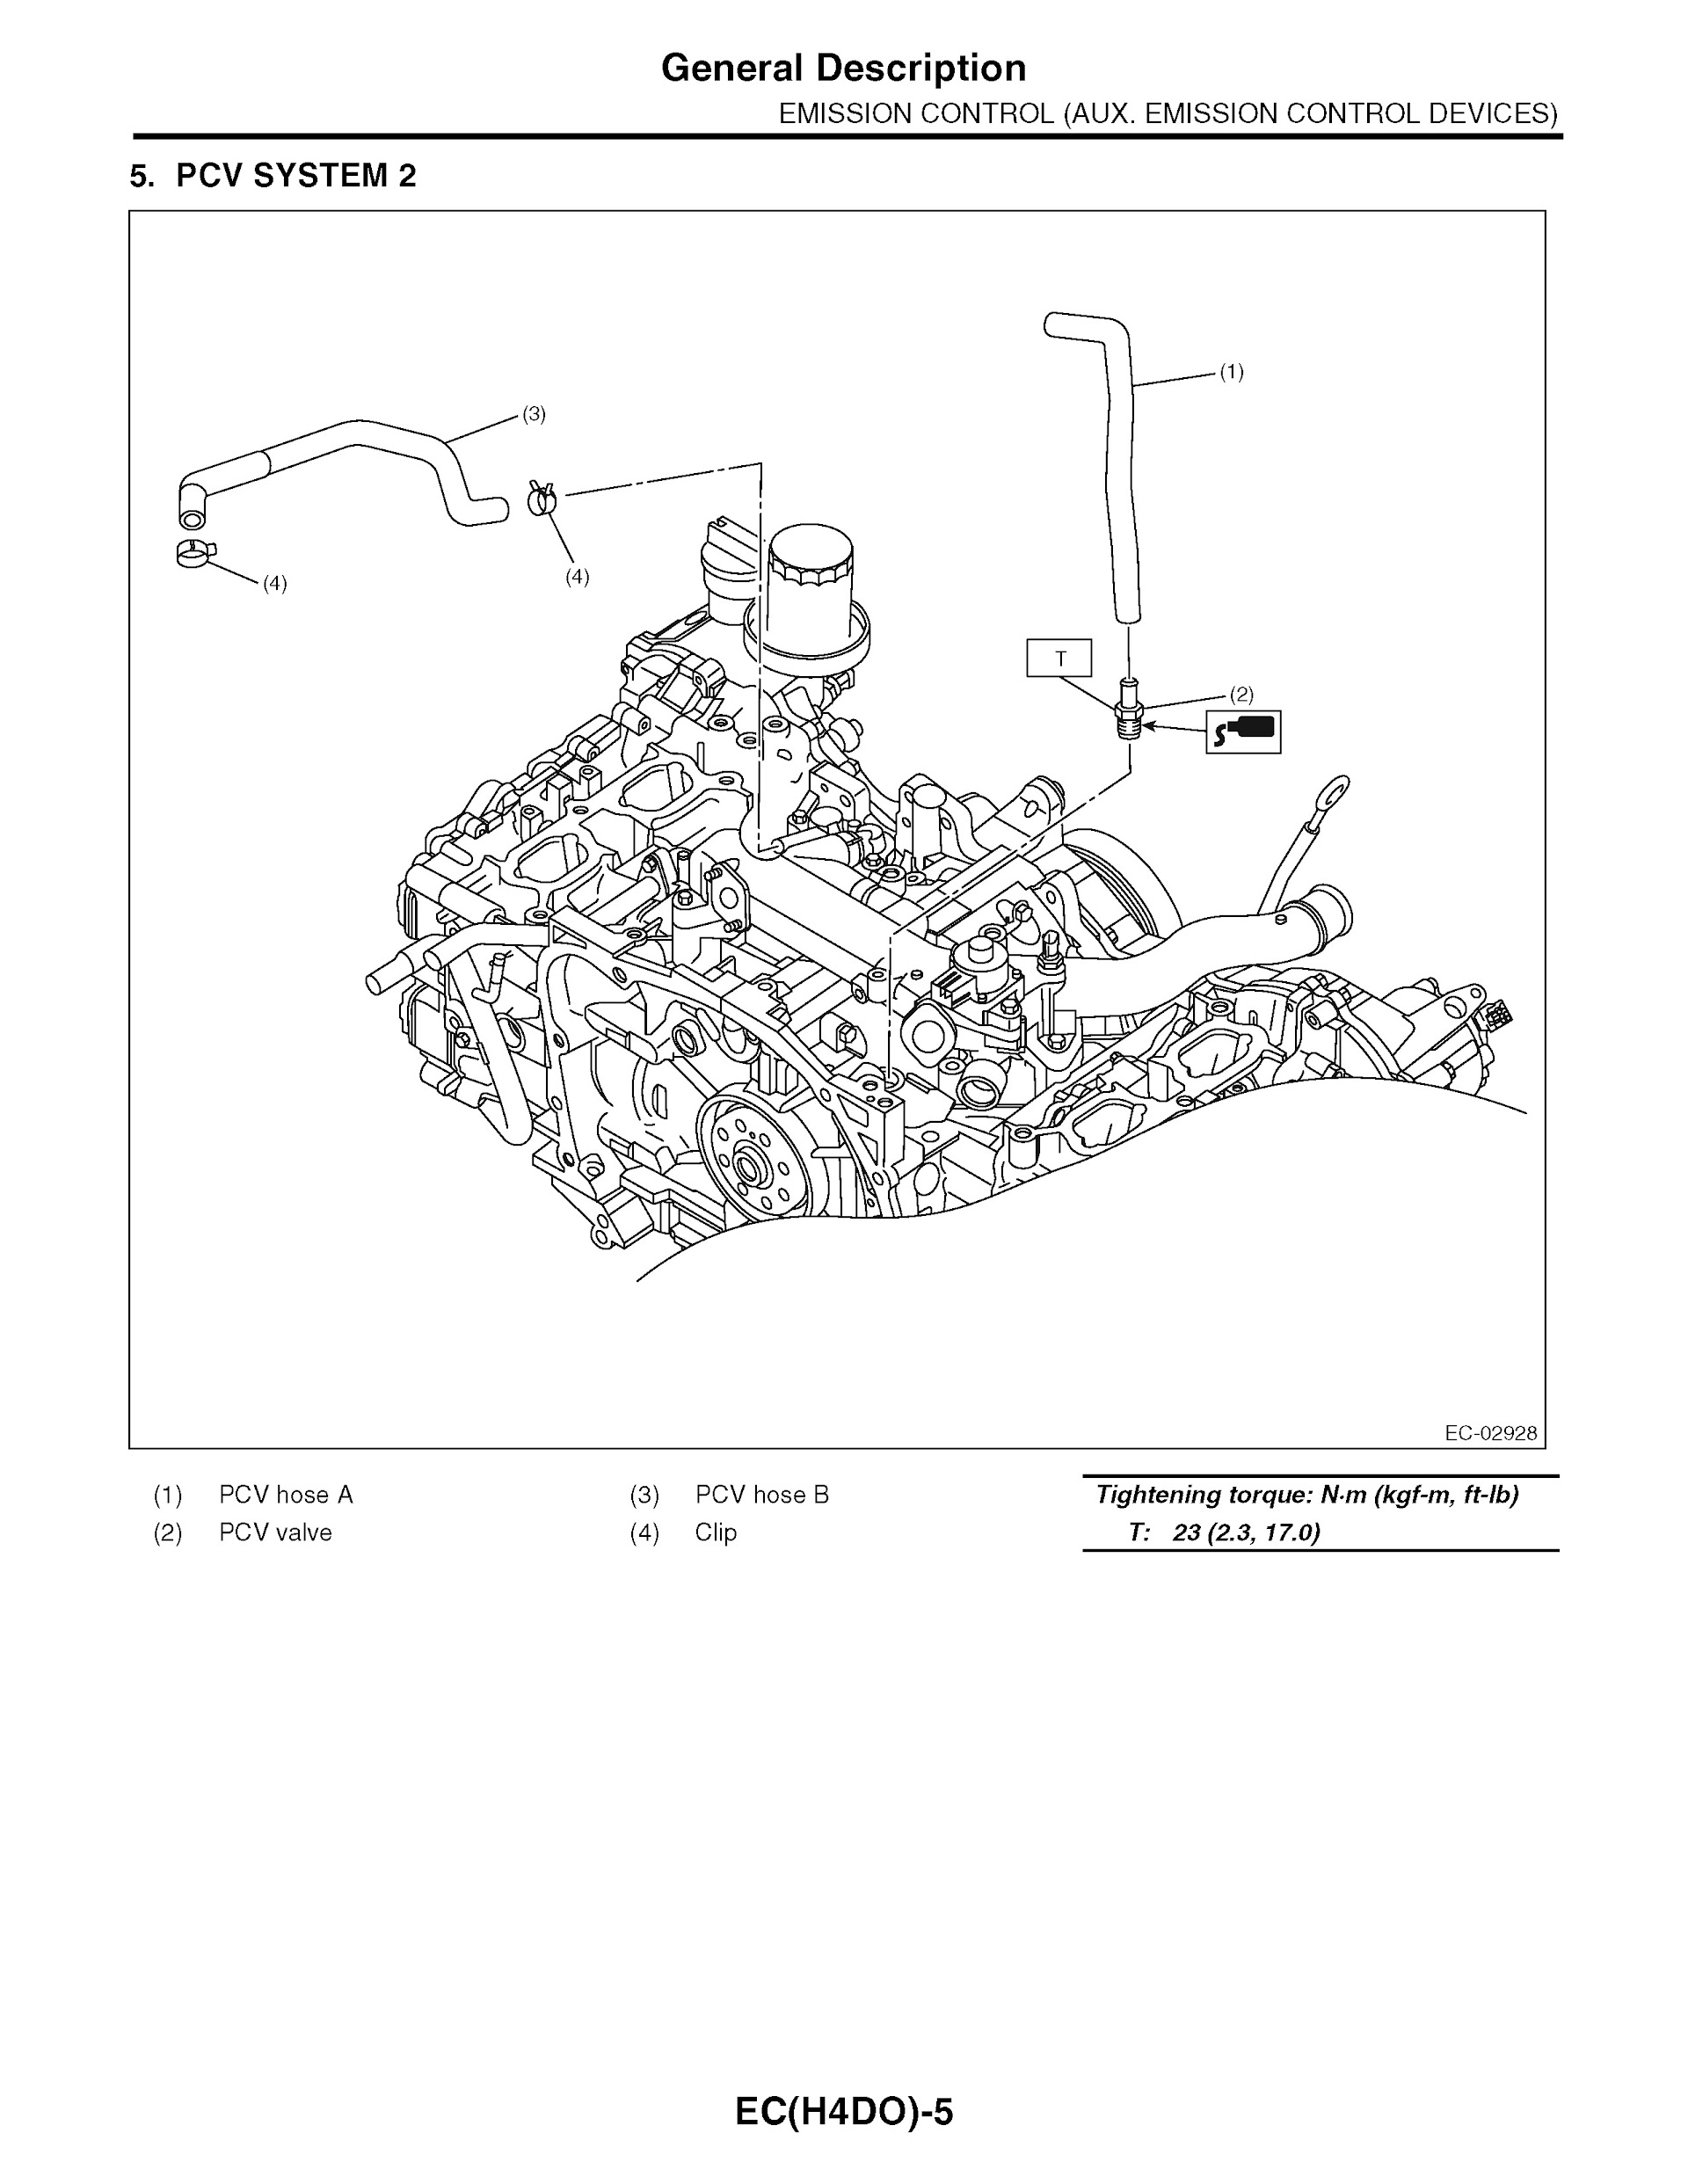 2013 Subaru Impreza & XV Crosstrek Repair Manual, Emission Control